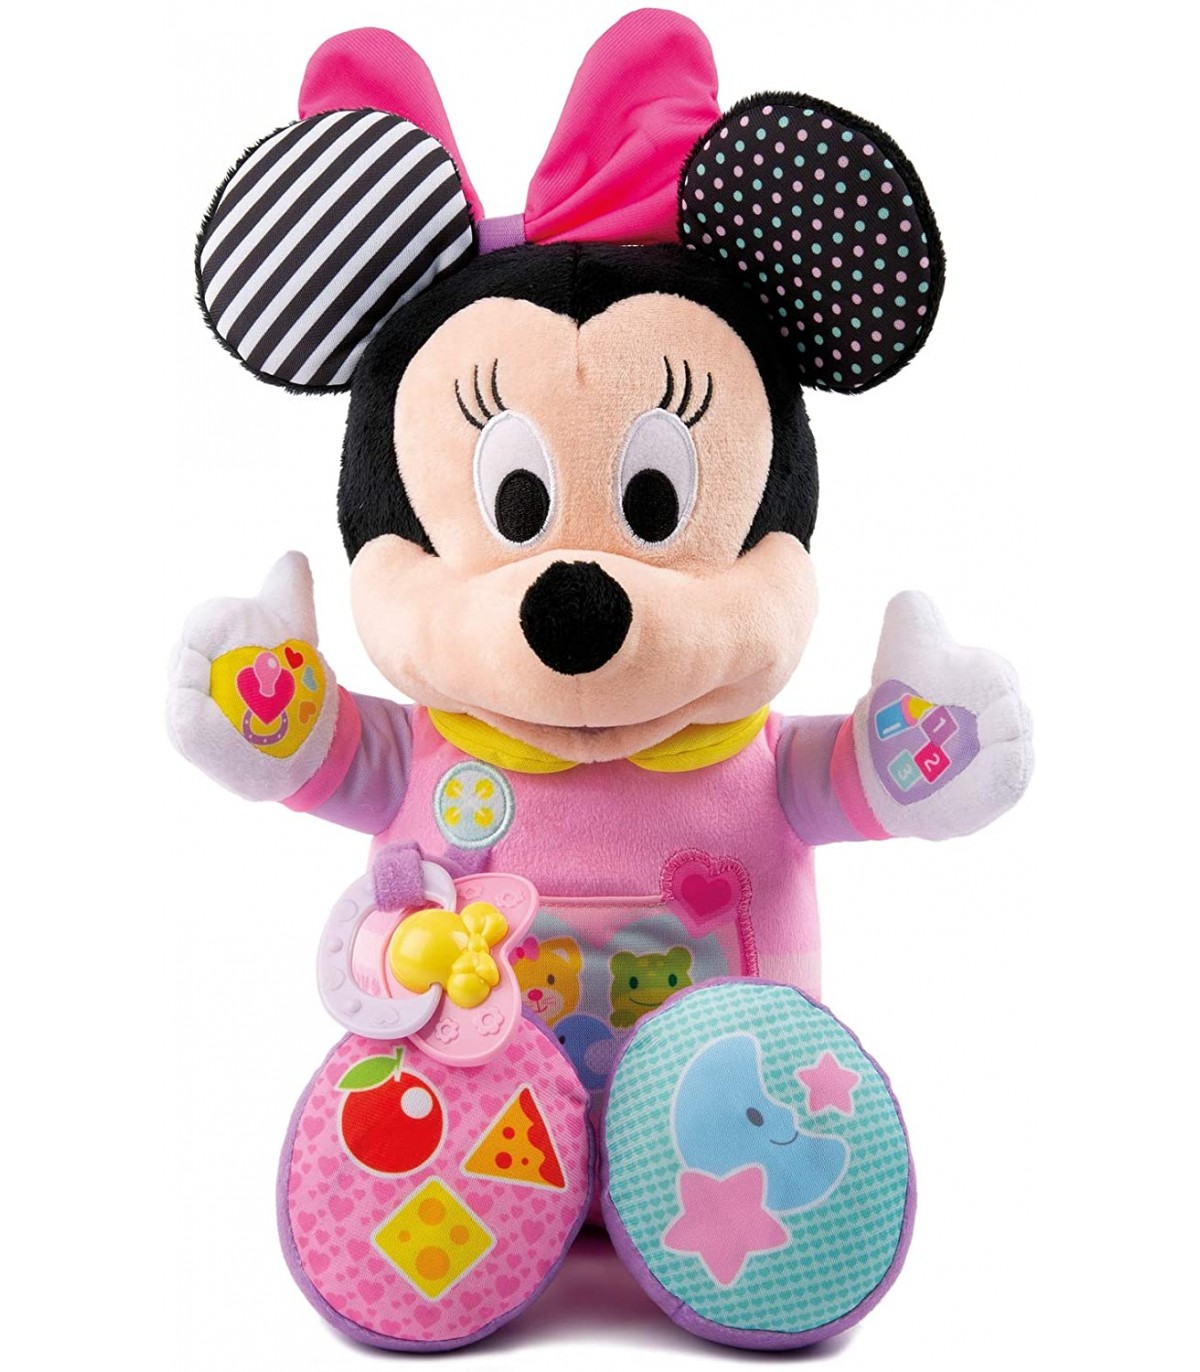 Disney Peluche pequeño Minnie Mouse - Rosa